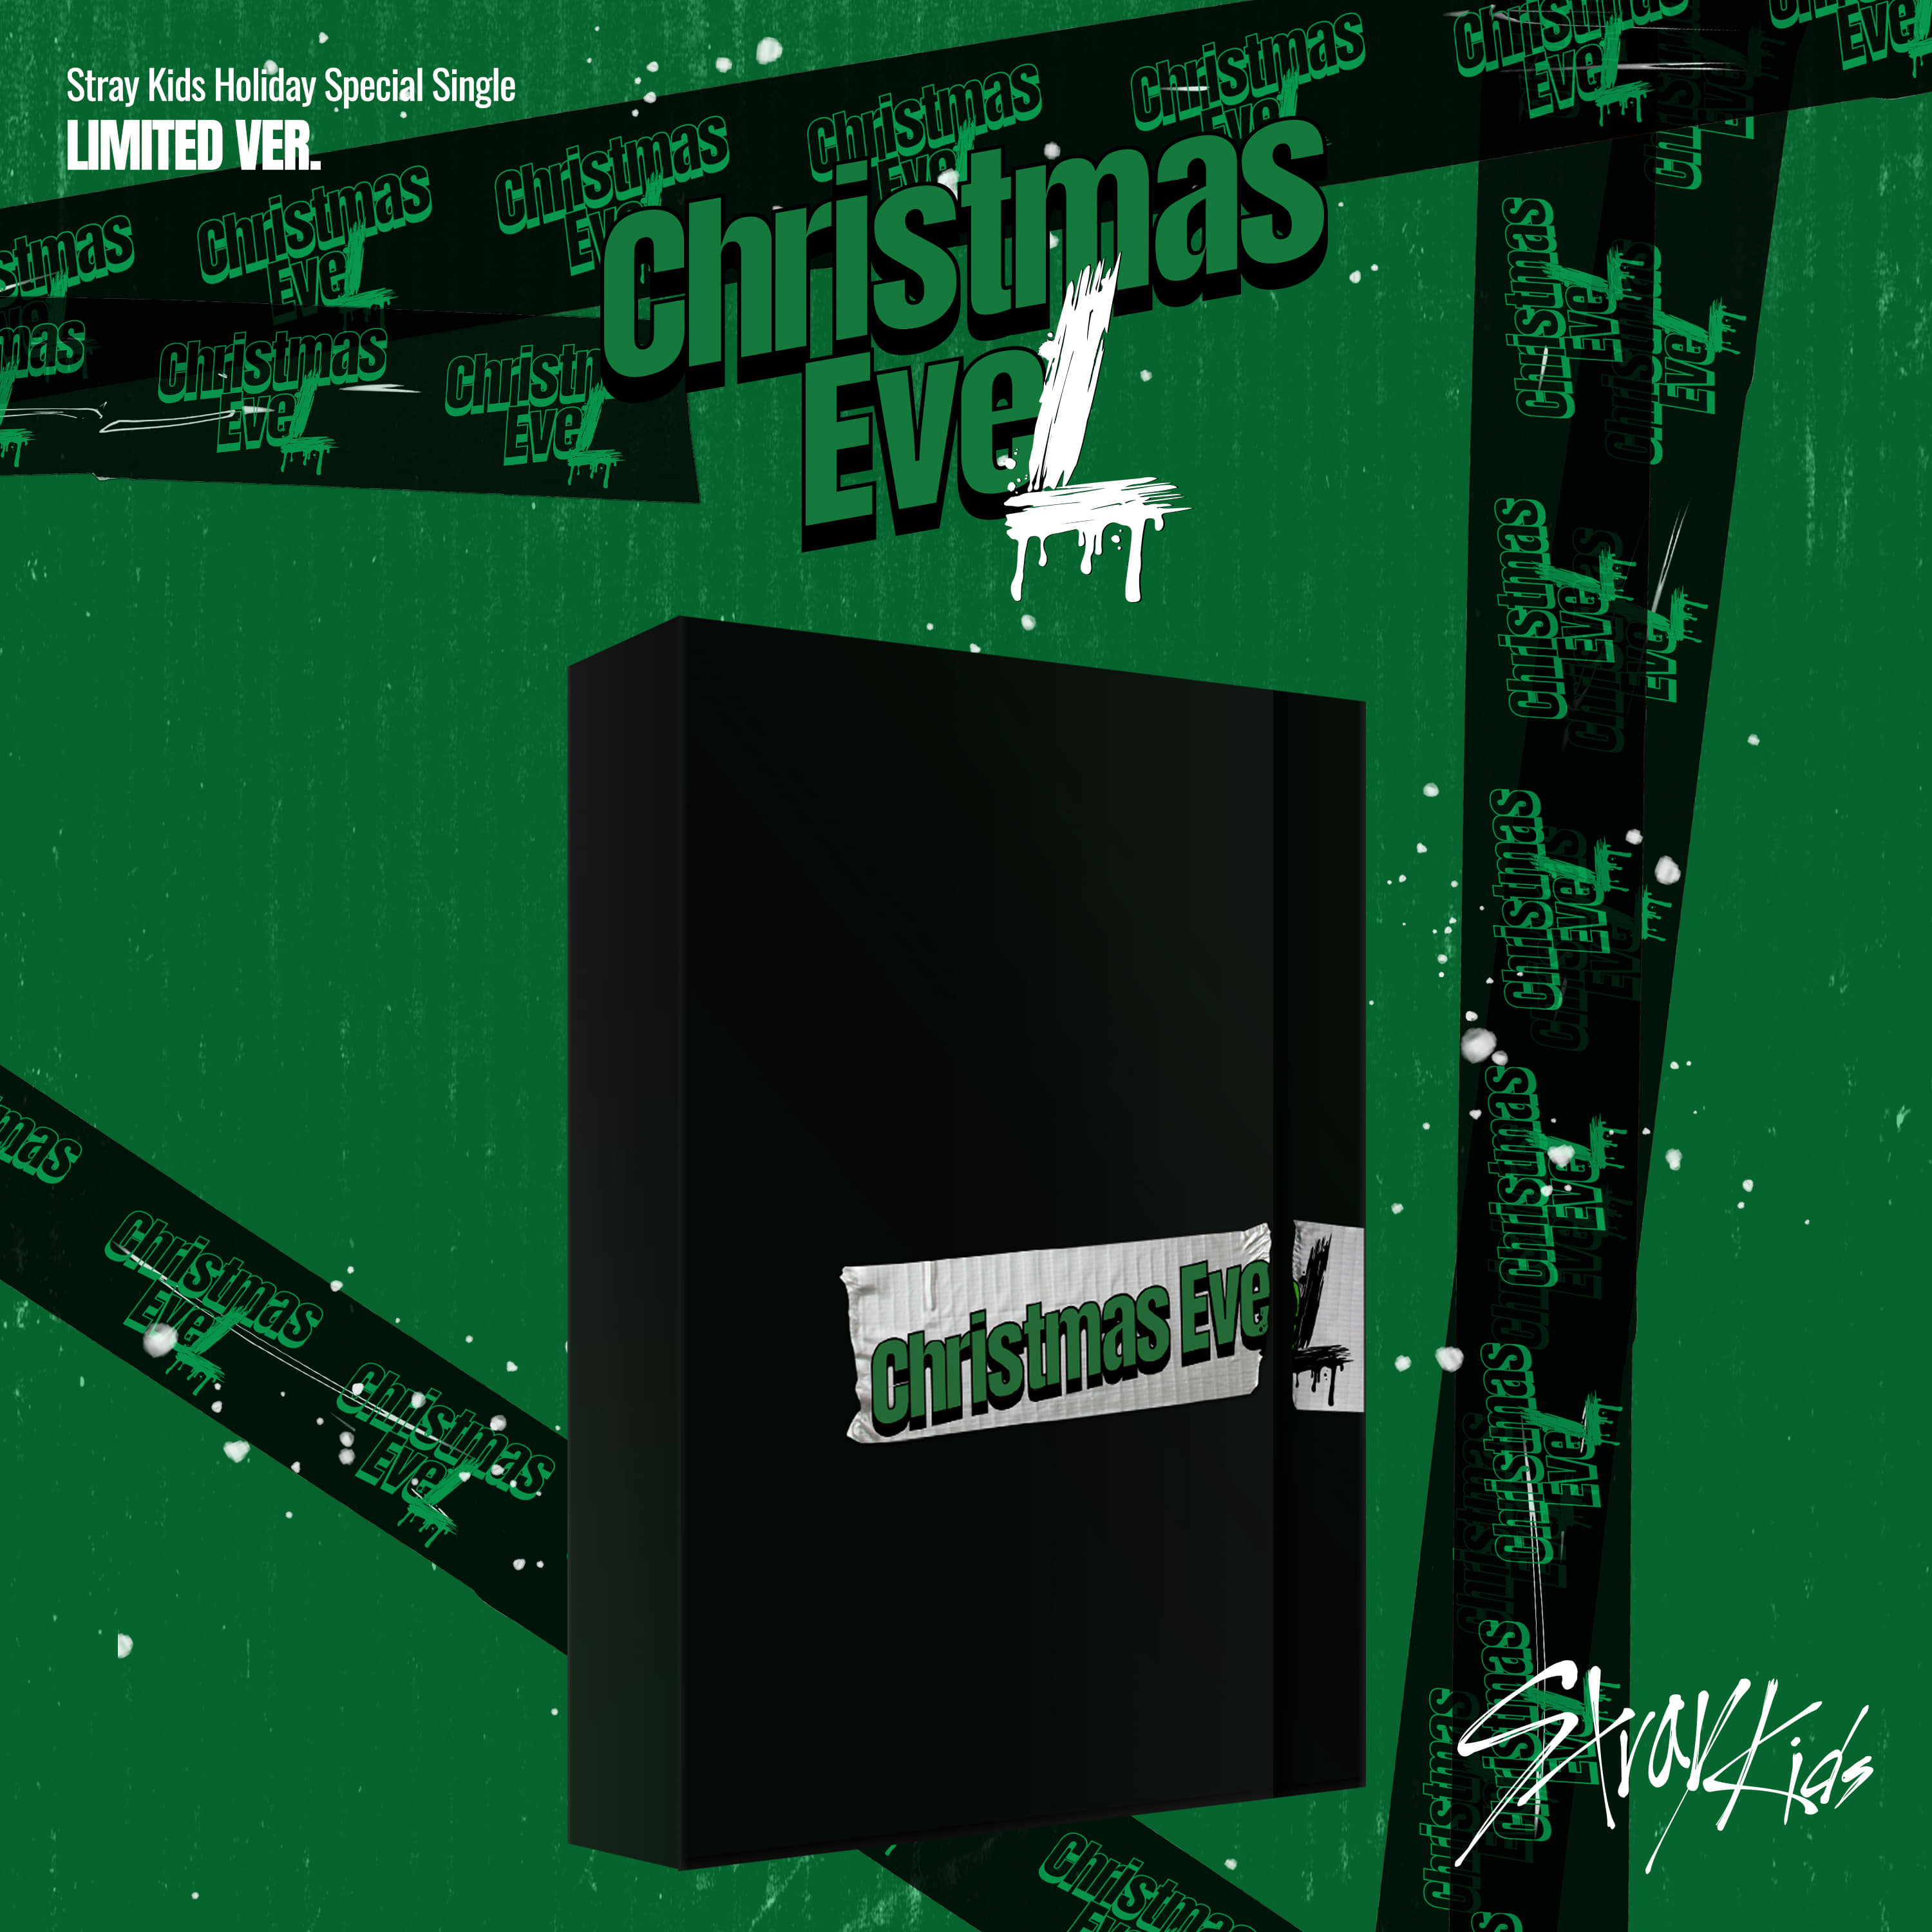 스트레이 키즈(Stray Kids) - [Holiday Special Single Christmas EveL] (Limited Ver.)케이팝스토어(kpop store)